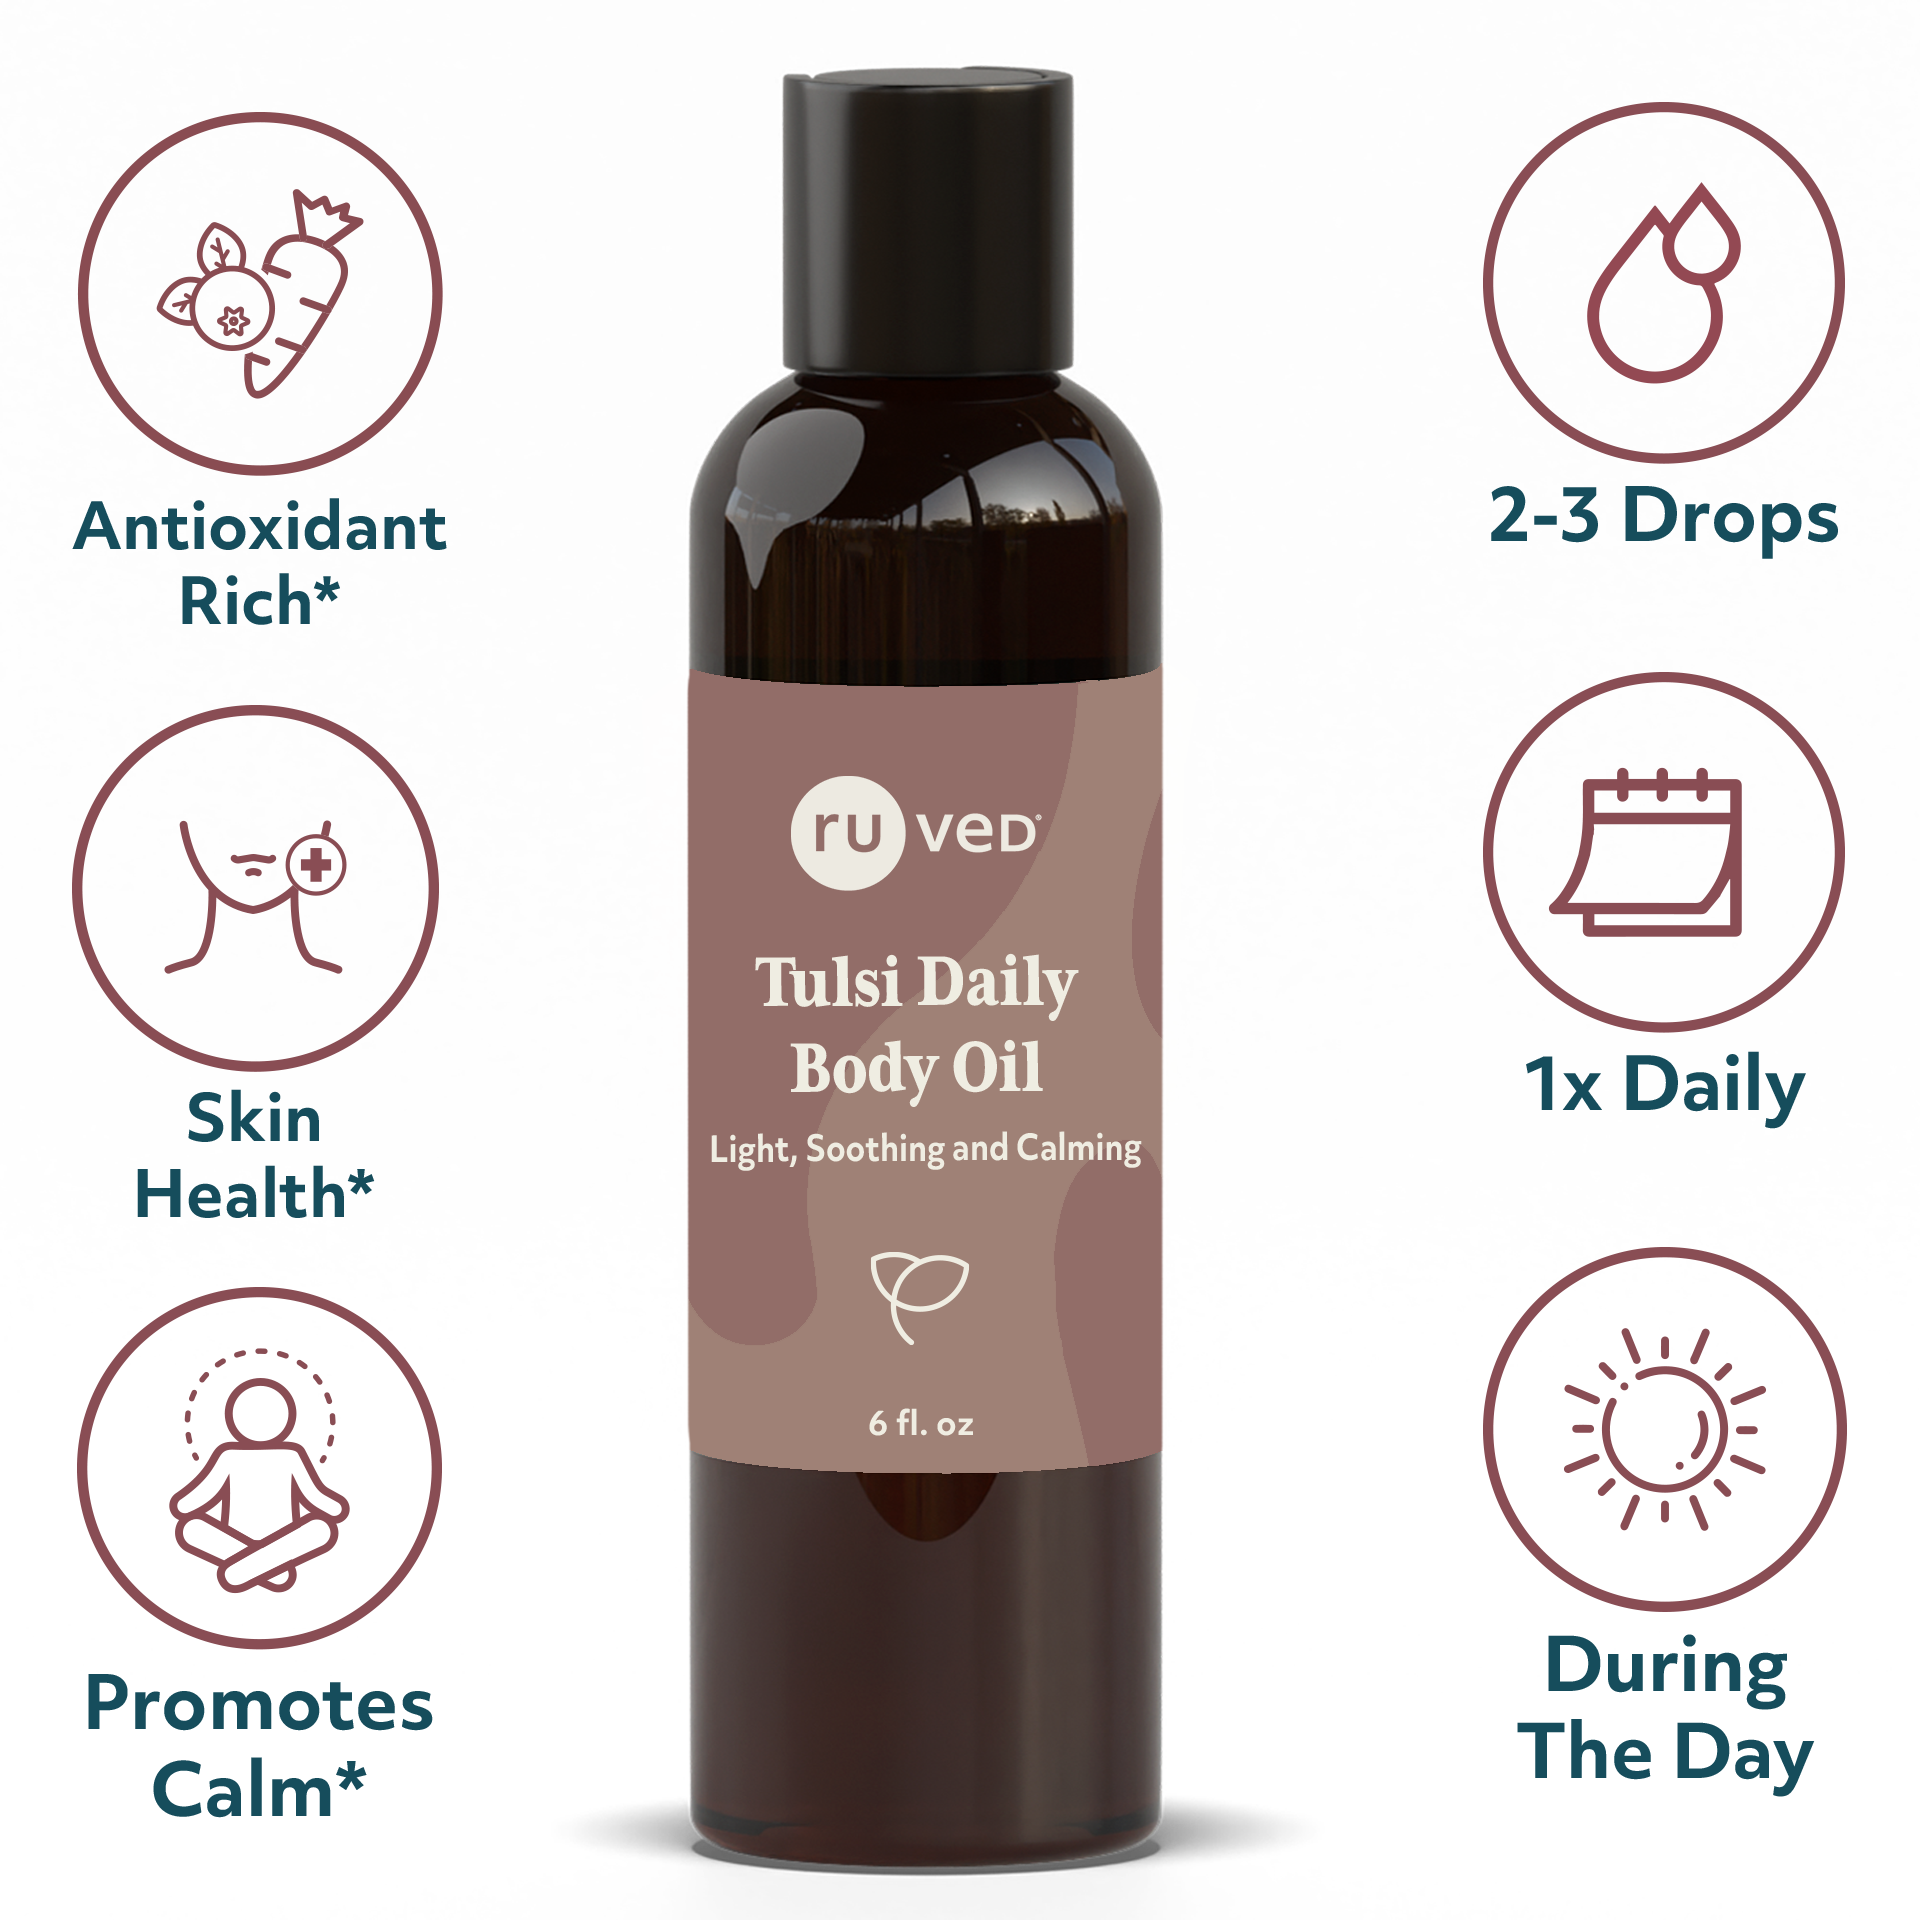 Tulsi Body Oil Infographics - Organic Holy Basil Infused Oil, 100ml Bottle, Nourishing Herbal Skincare for Radiant Skin.